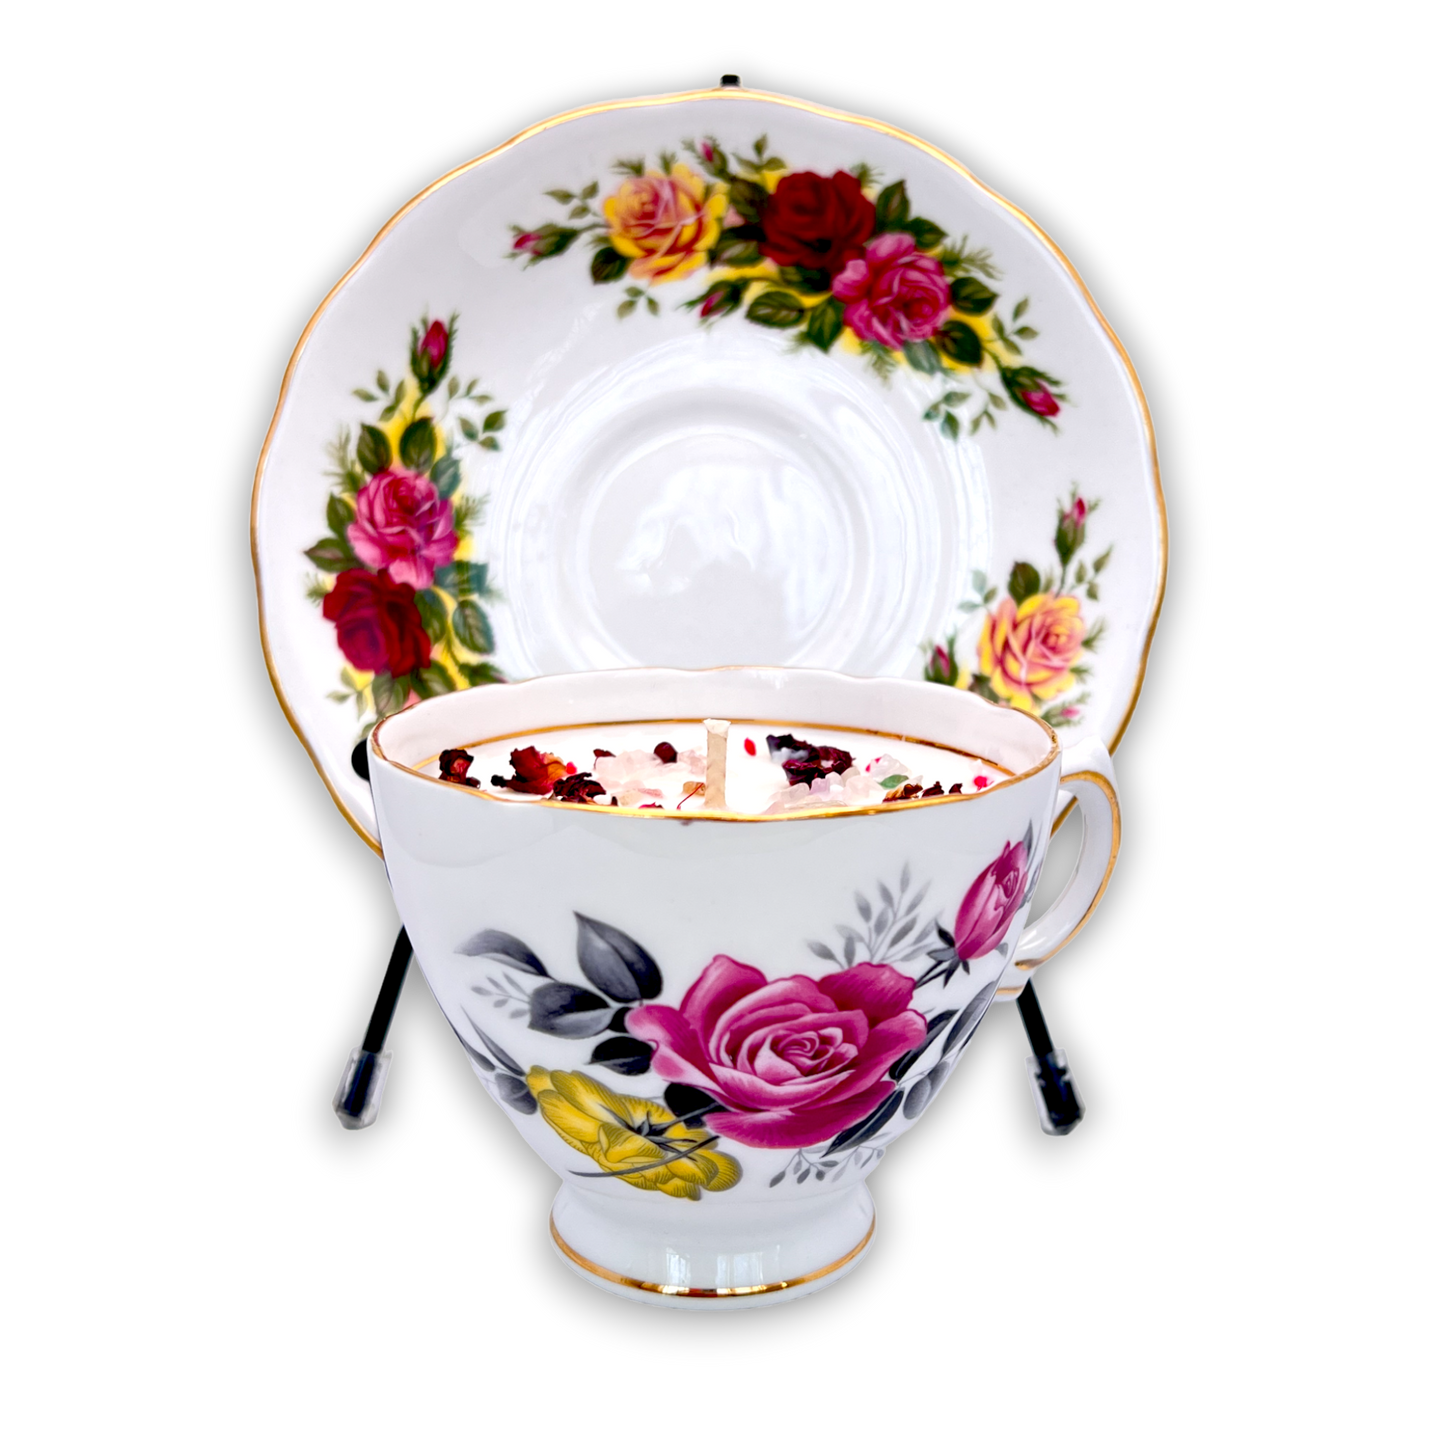 British Royal Vale-Rose Vintage Teacup Candle